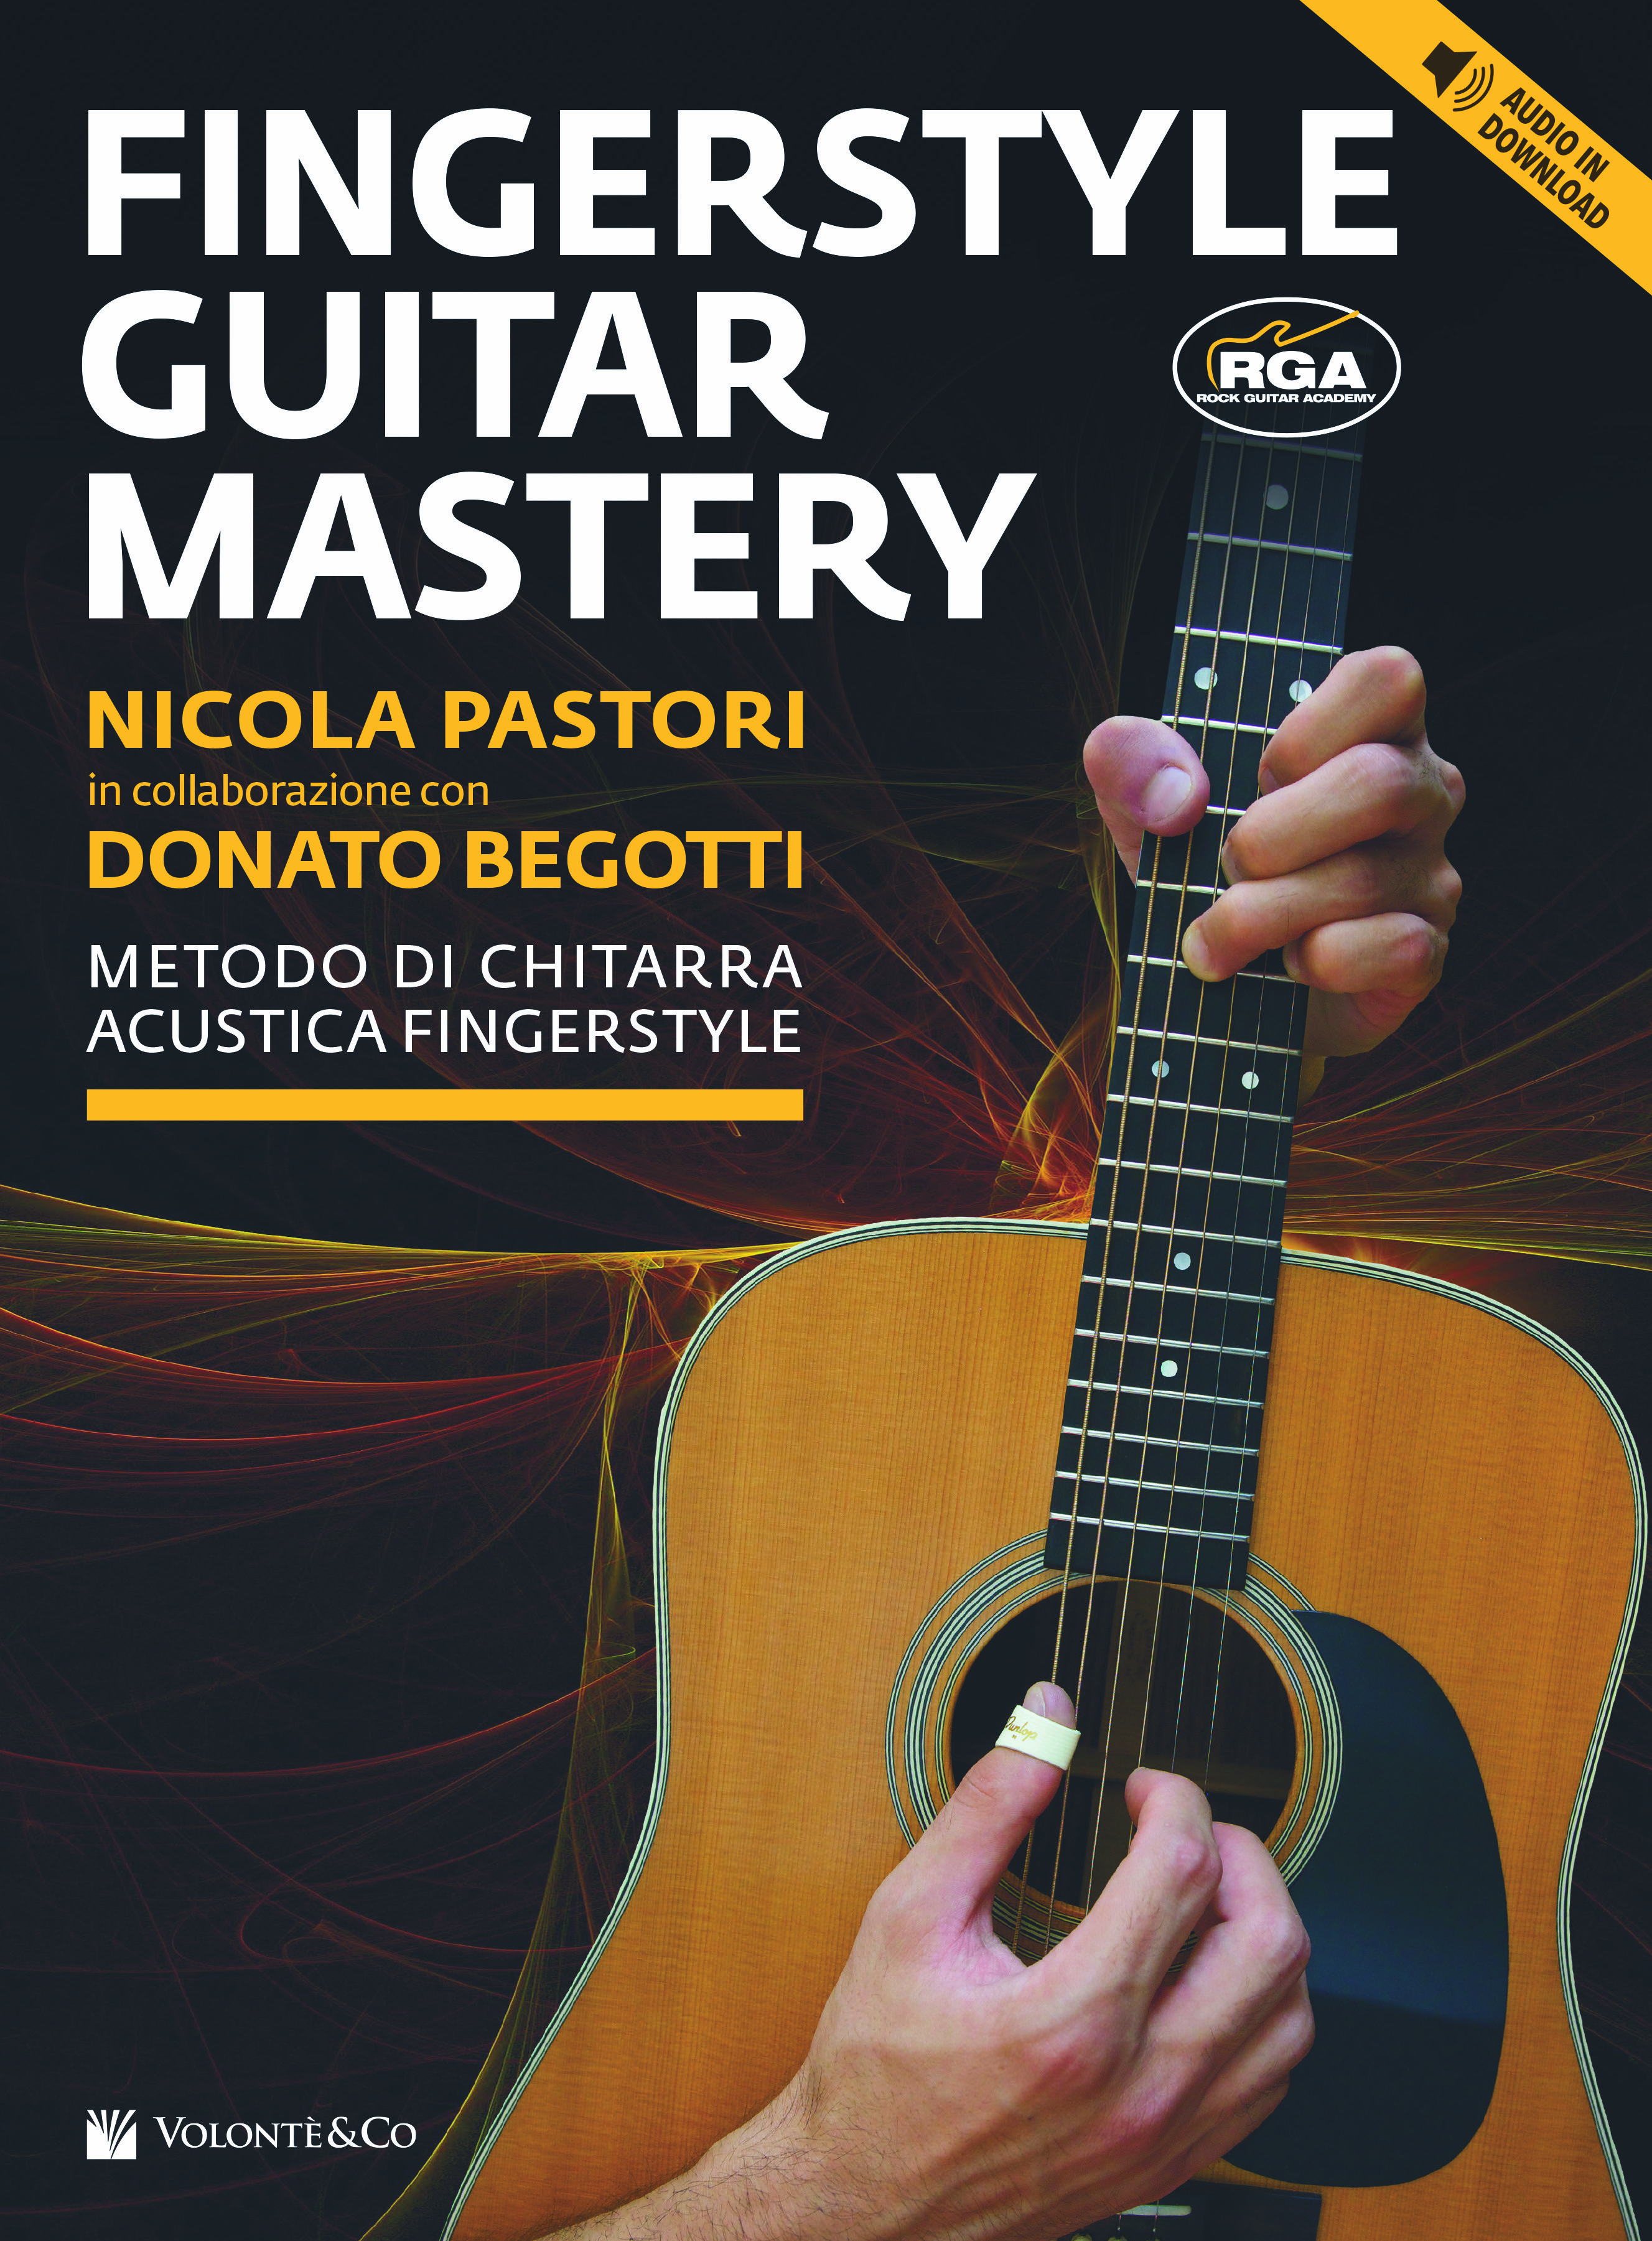 "Fingerstyle Guitar Mastery" ma non solo quello